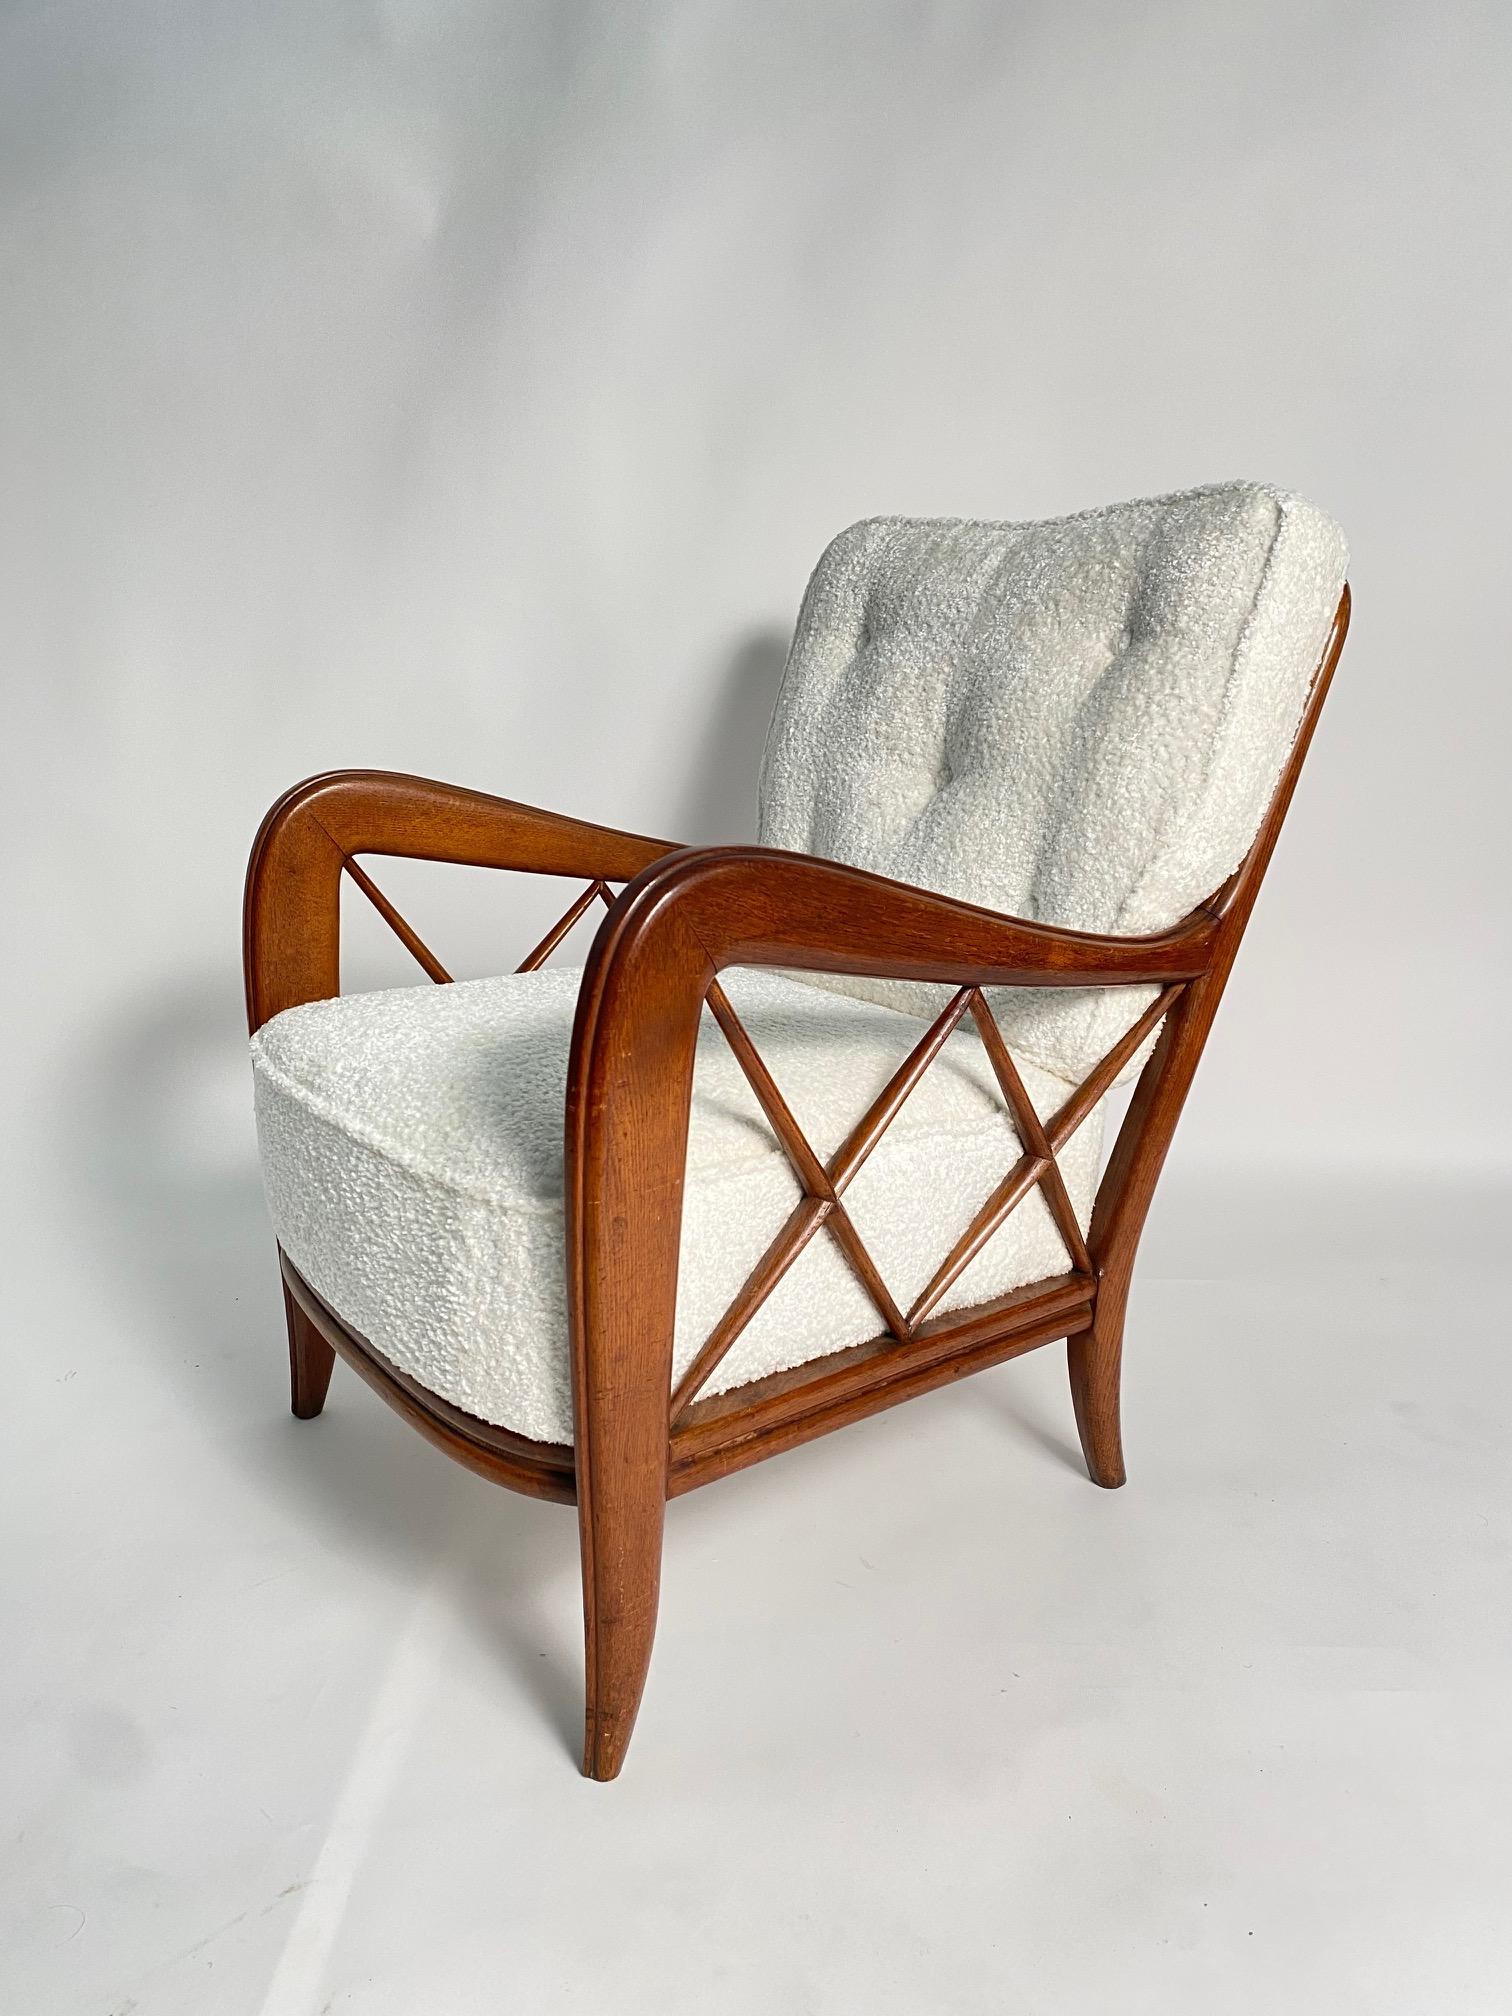 Paire de fauteuils du milieu du siècle dans le style de Paolo Buffa, Italie

Voici une très élégante paire de fauteuils italiens des années 1950, structure en bois massif poli et coussins en tissu, une forme iconique et très raffinée qui s'adapte